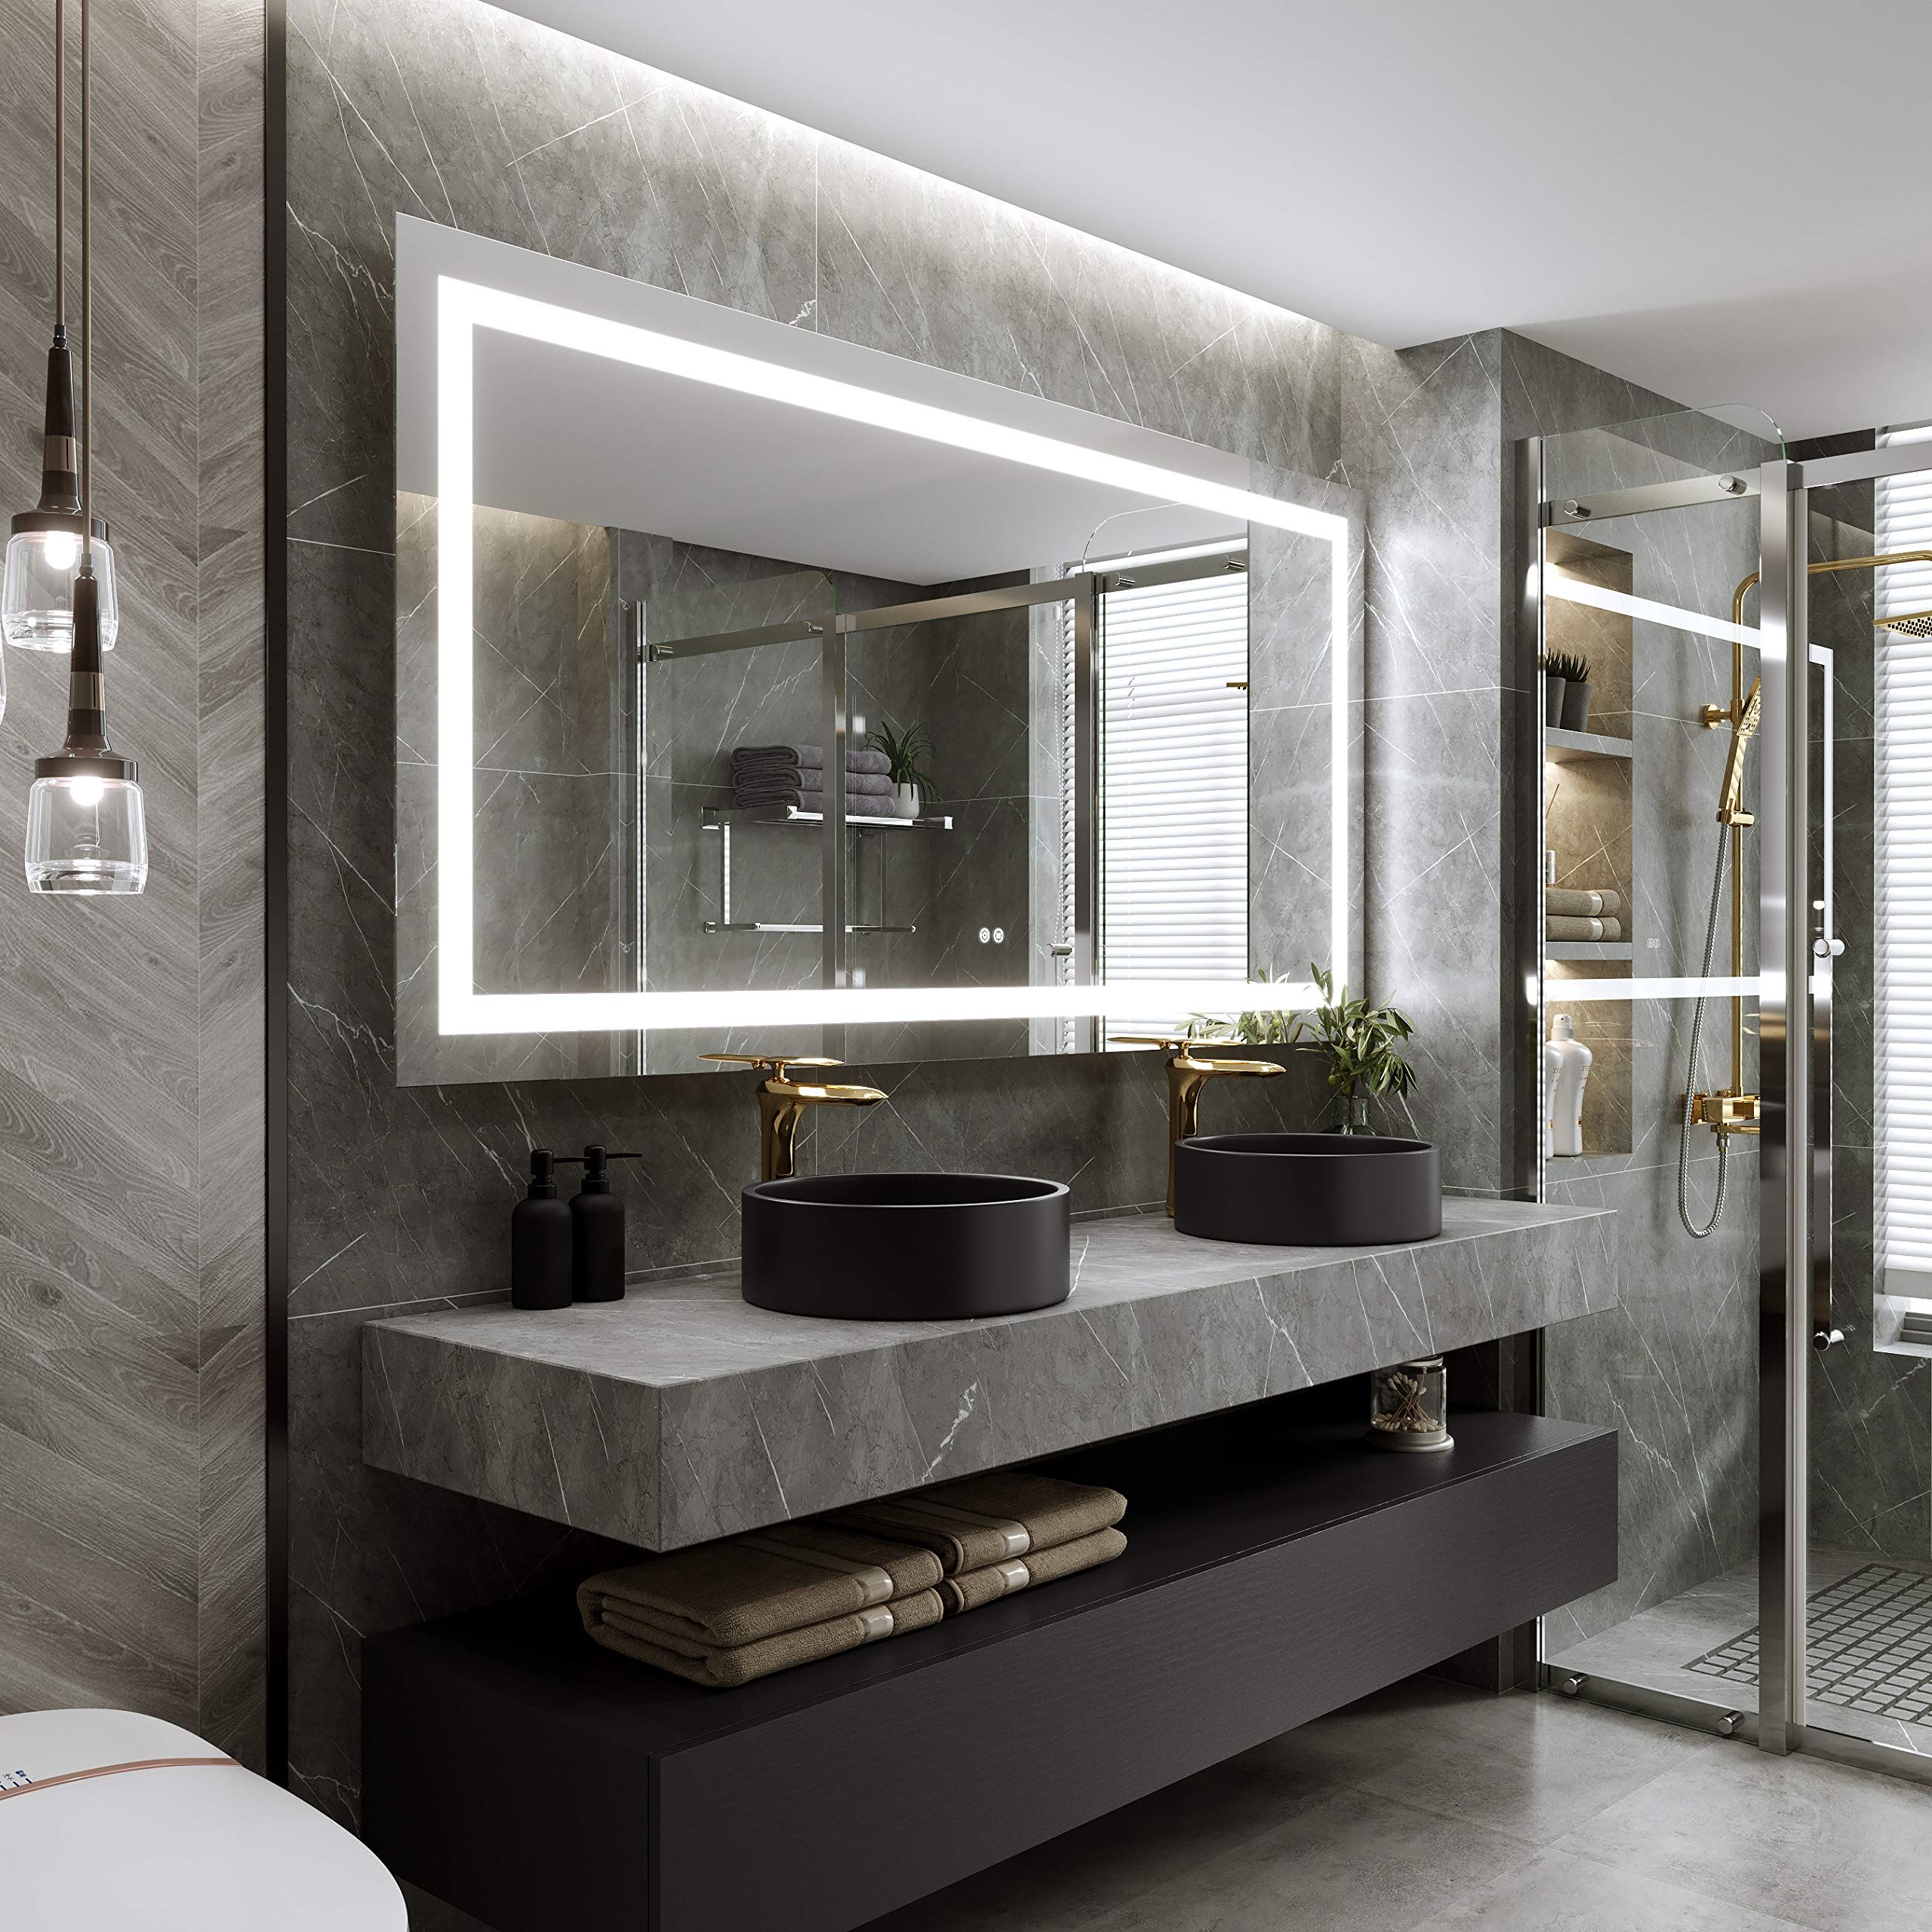 LED Bathroom Vanity Mirrors